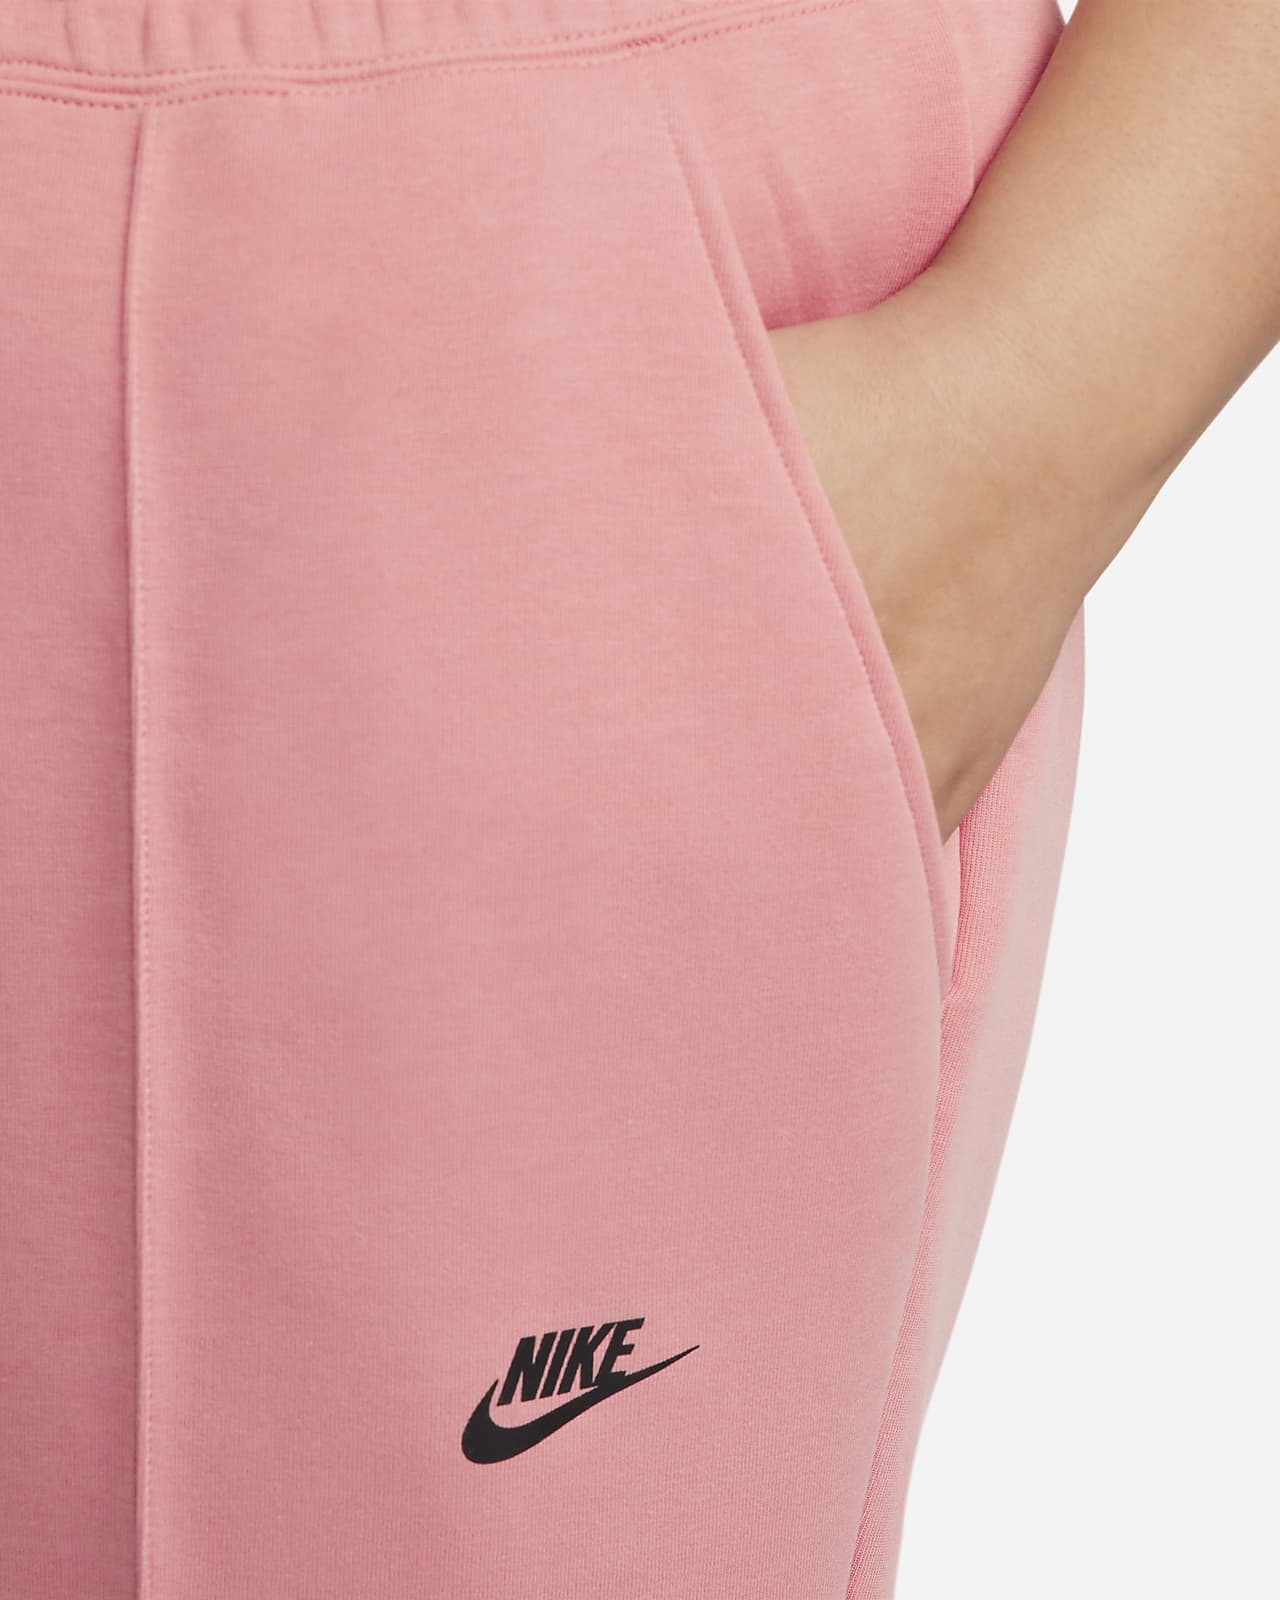 Nike Women's Fleece Pants Trousers Bottoms Sportswear Essential Green Pink